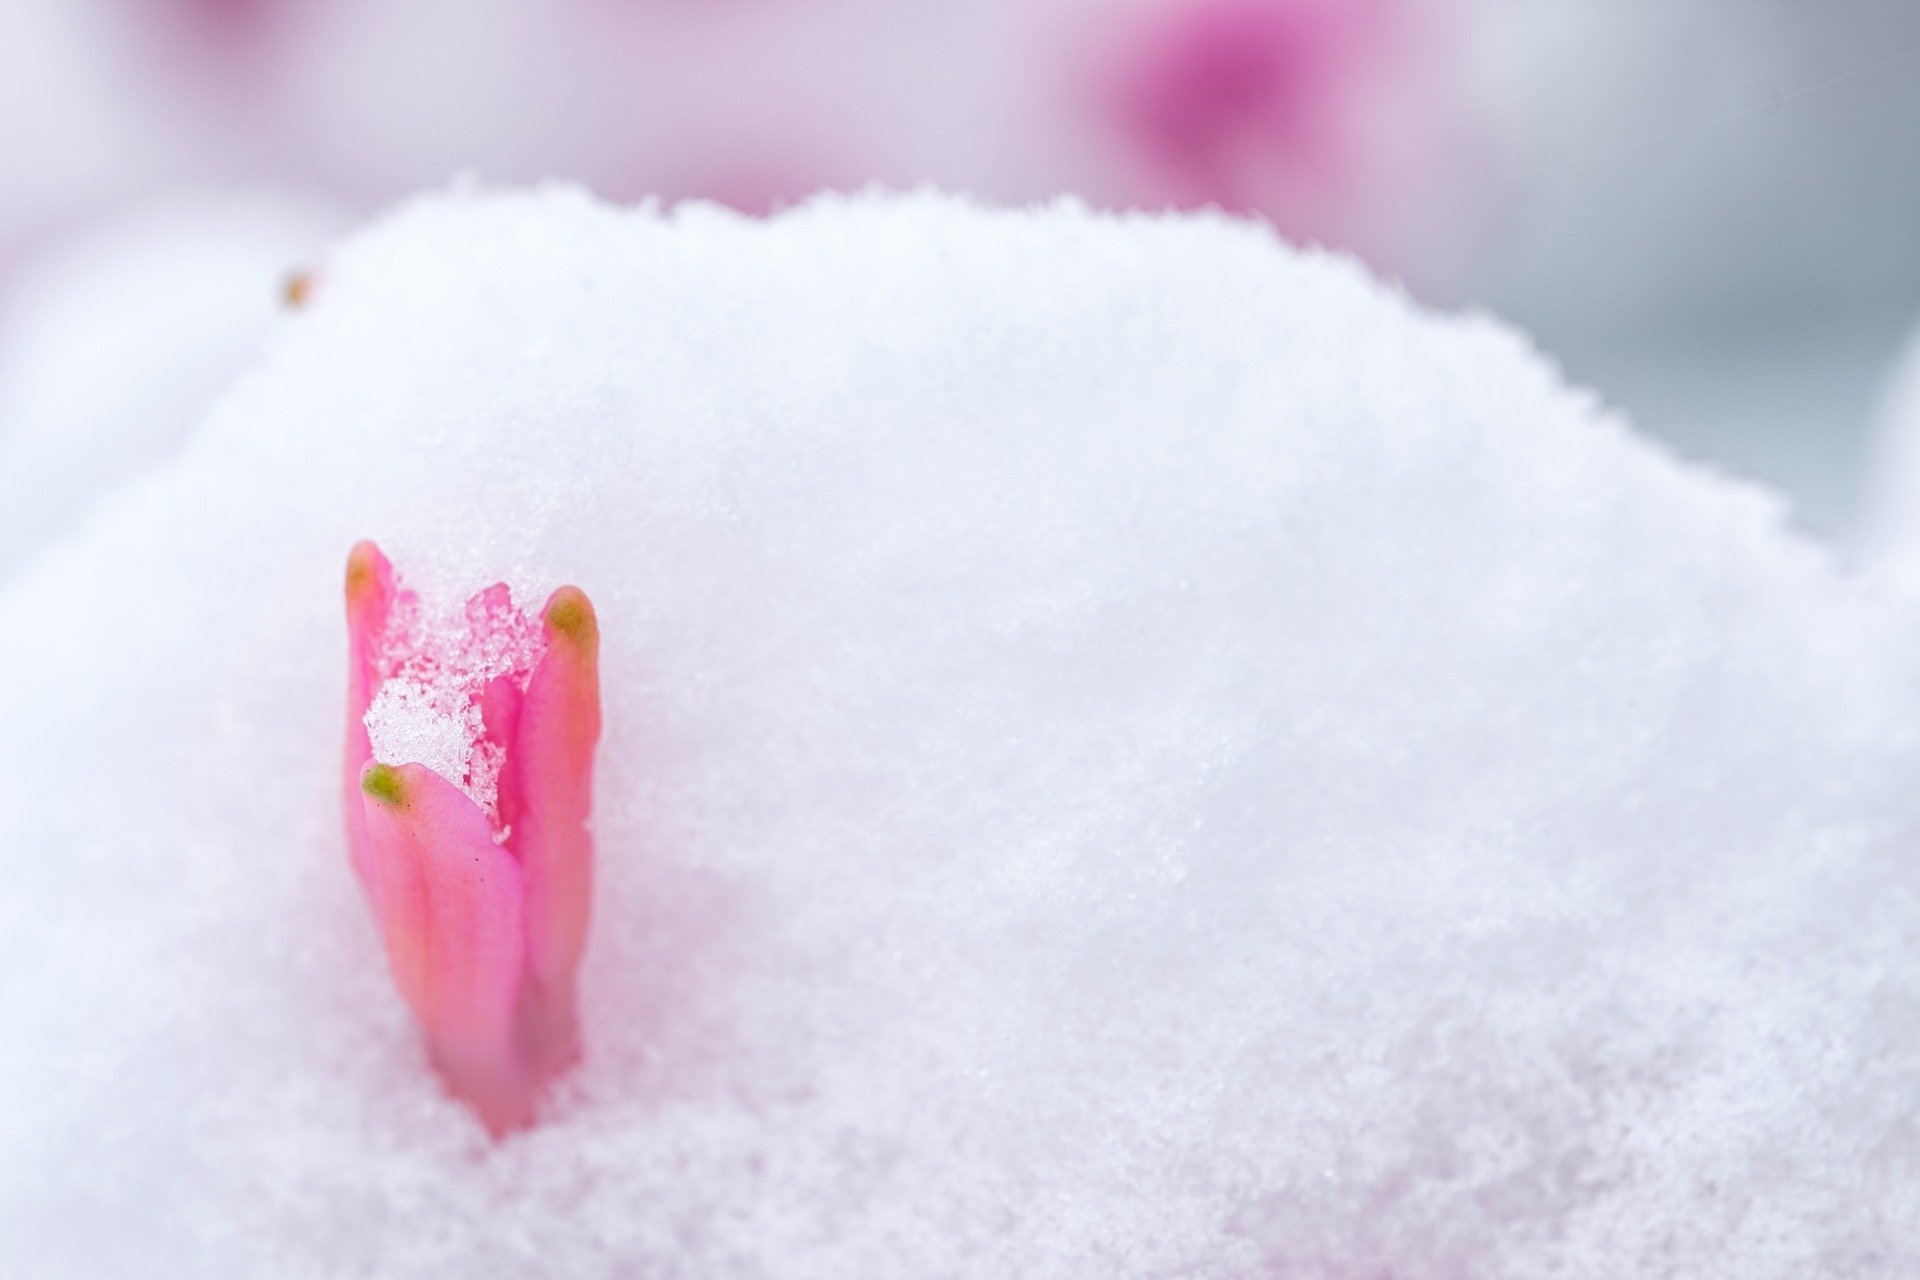 Цветков сугробов. Цветы в снегу. Цветы из под снега. Нежные цветы в снегу. Цветочек на снегу.